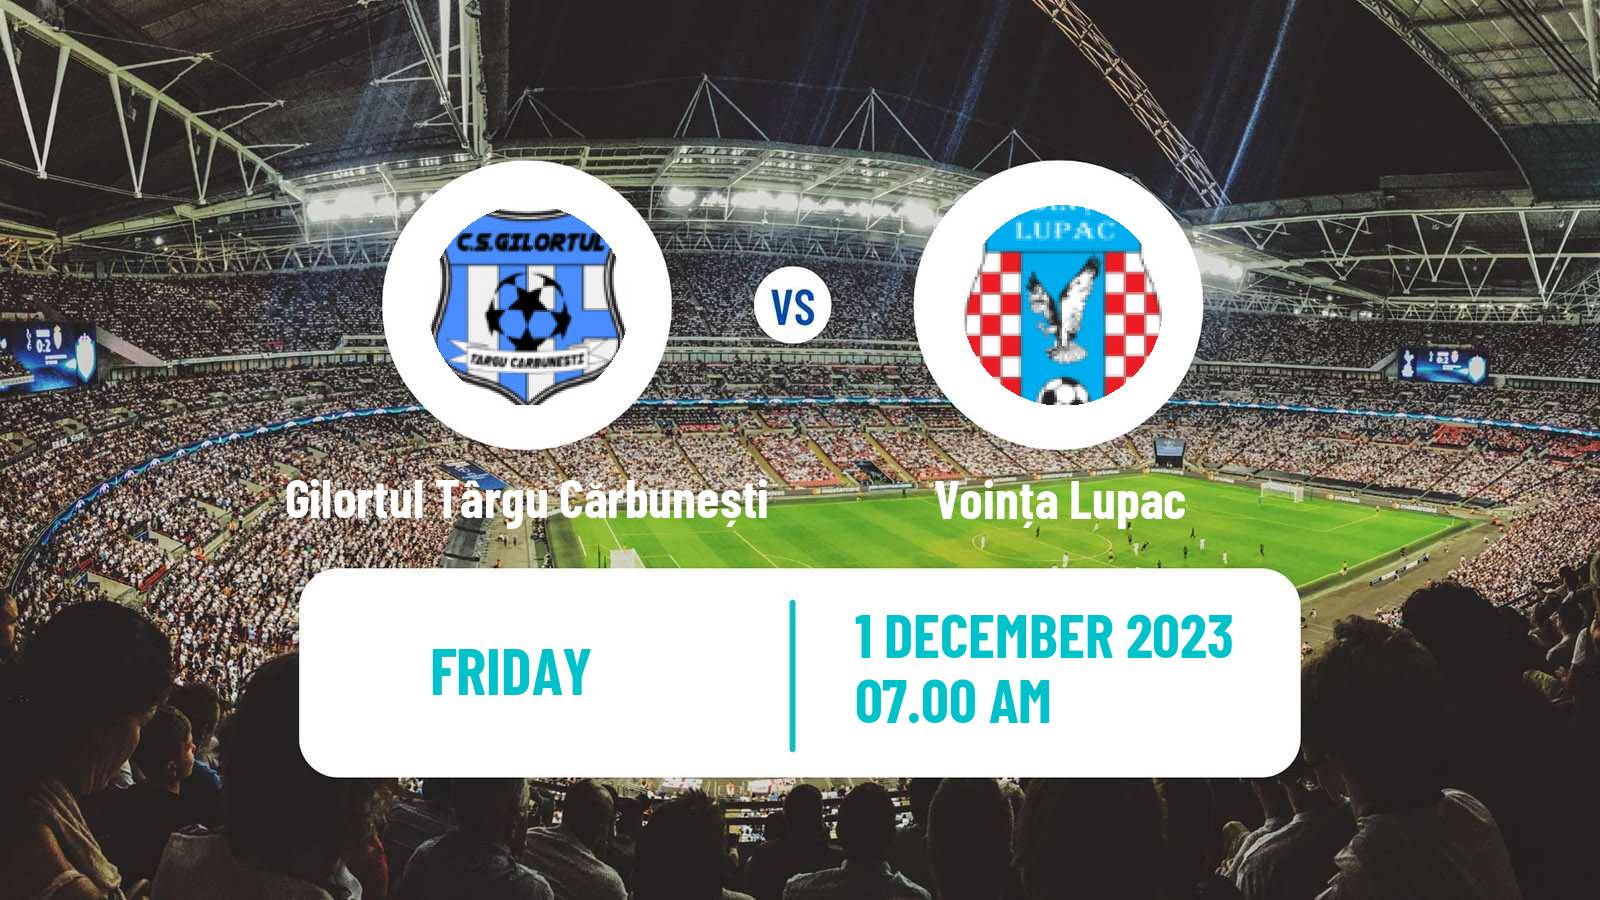 Soccer Romanian Liga 3 - Seria 7 Gilortul Târgu Cărbunești - Voința Lupac